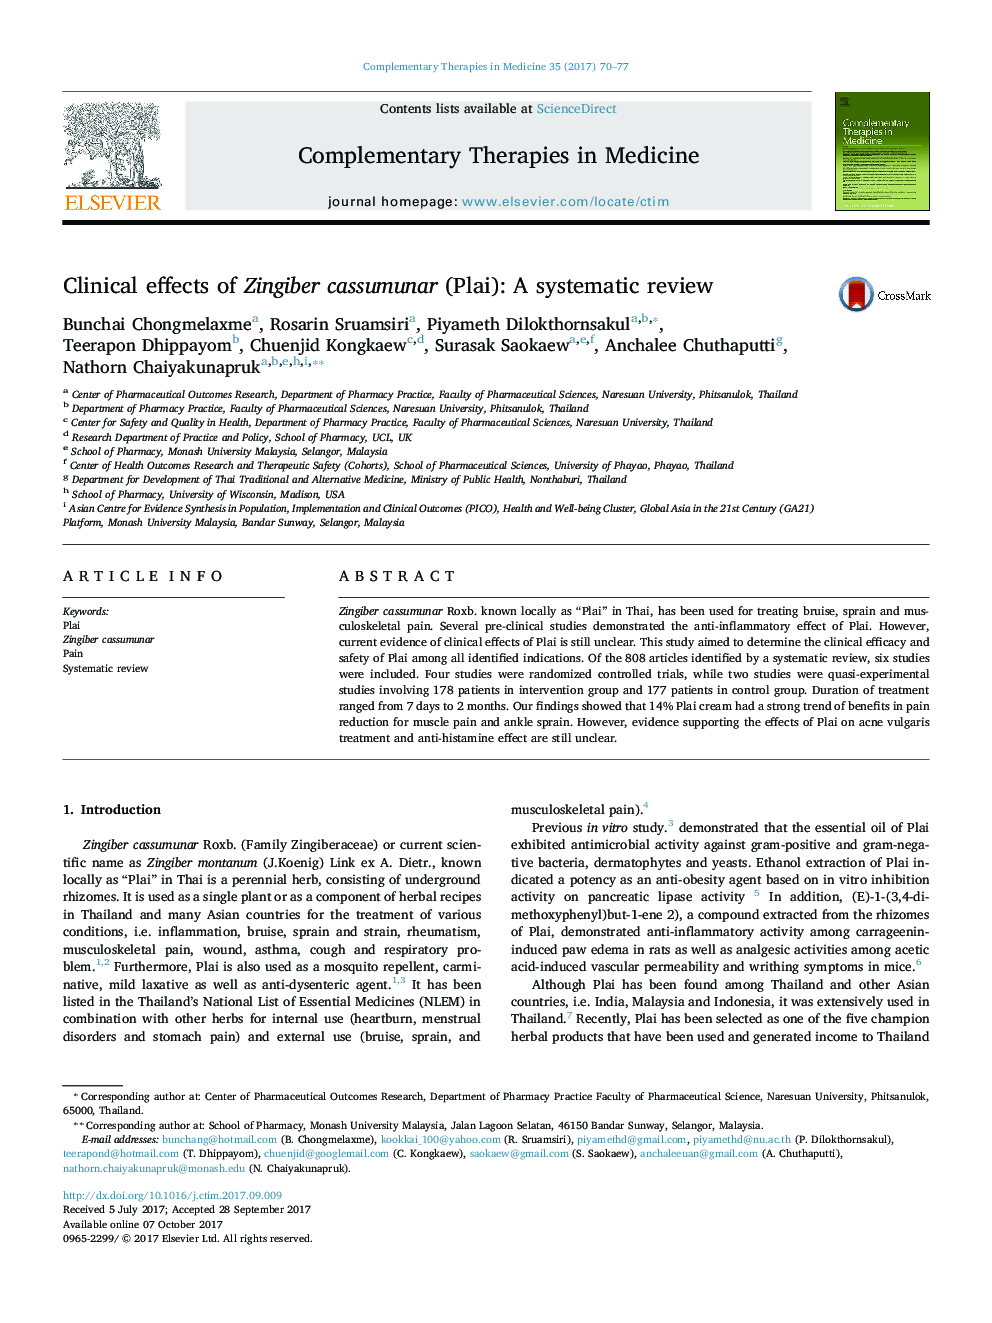 اثرات بالینی cassumunar گیاه زنجبیل (Plai): یک مرور سیستماتیک